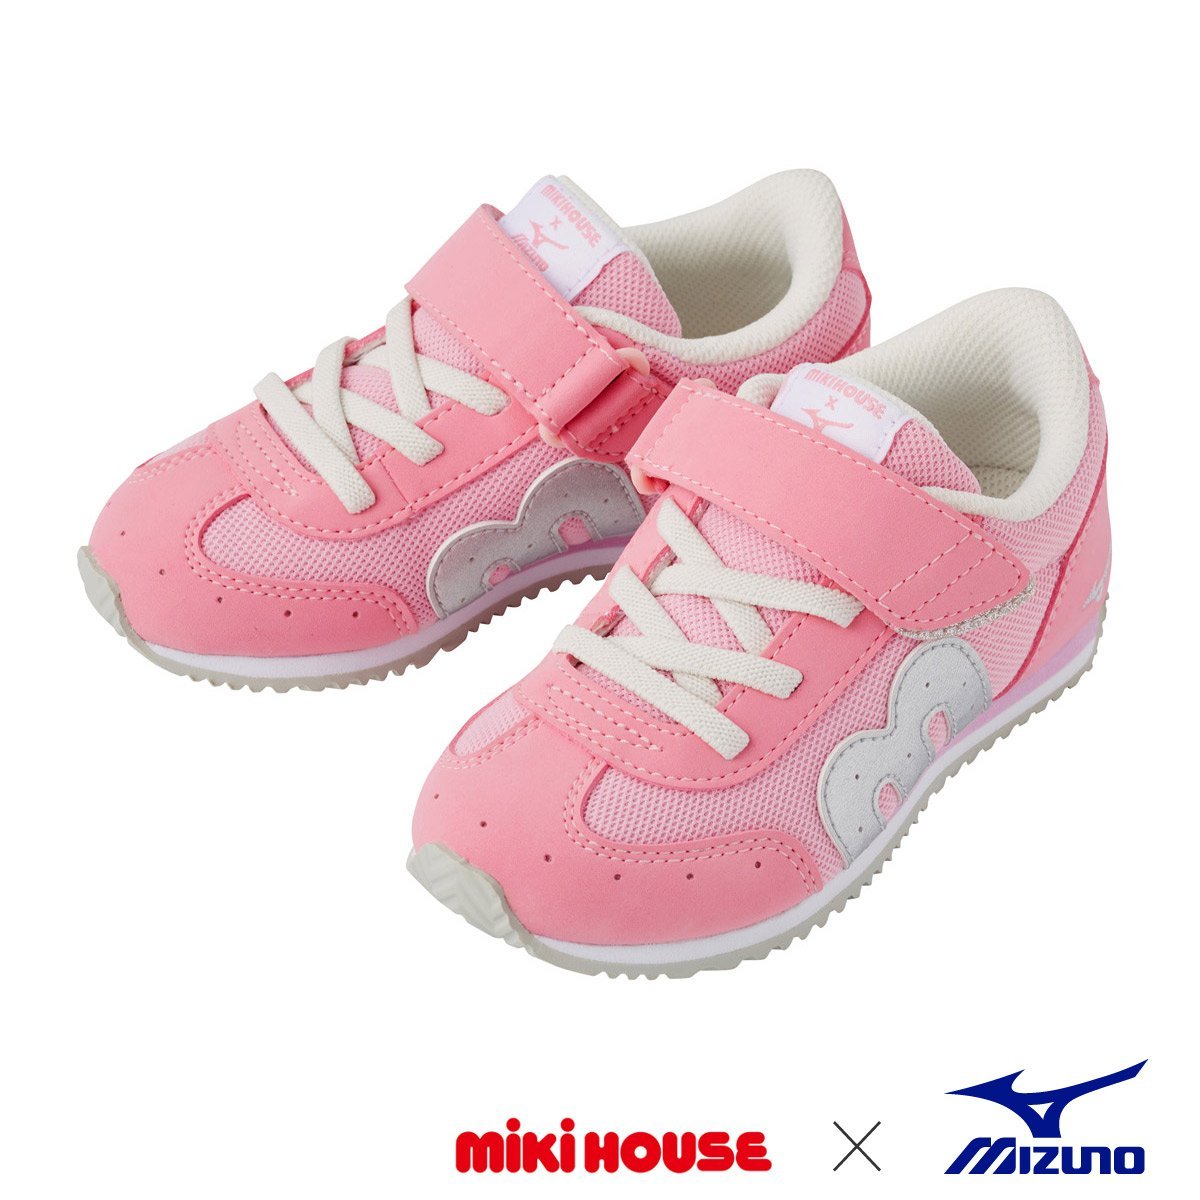 MIKI HOUSE & MIZUNO Shoes for Kids - 11-9401-828-08-16